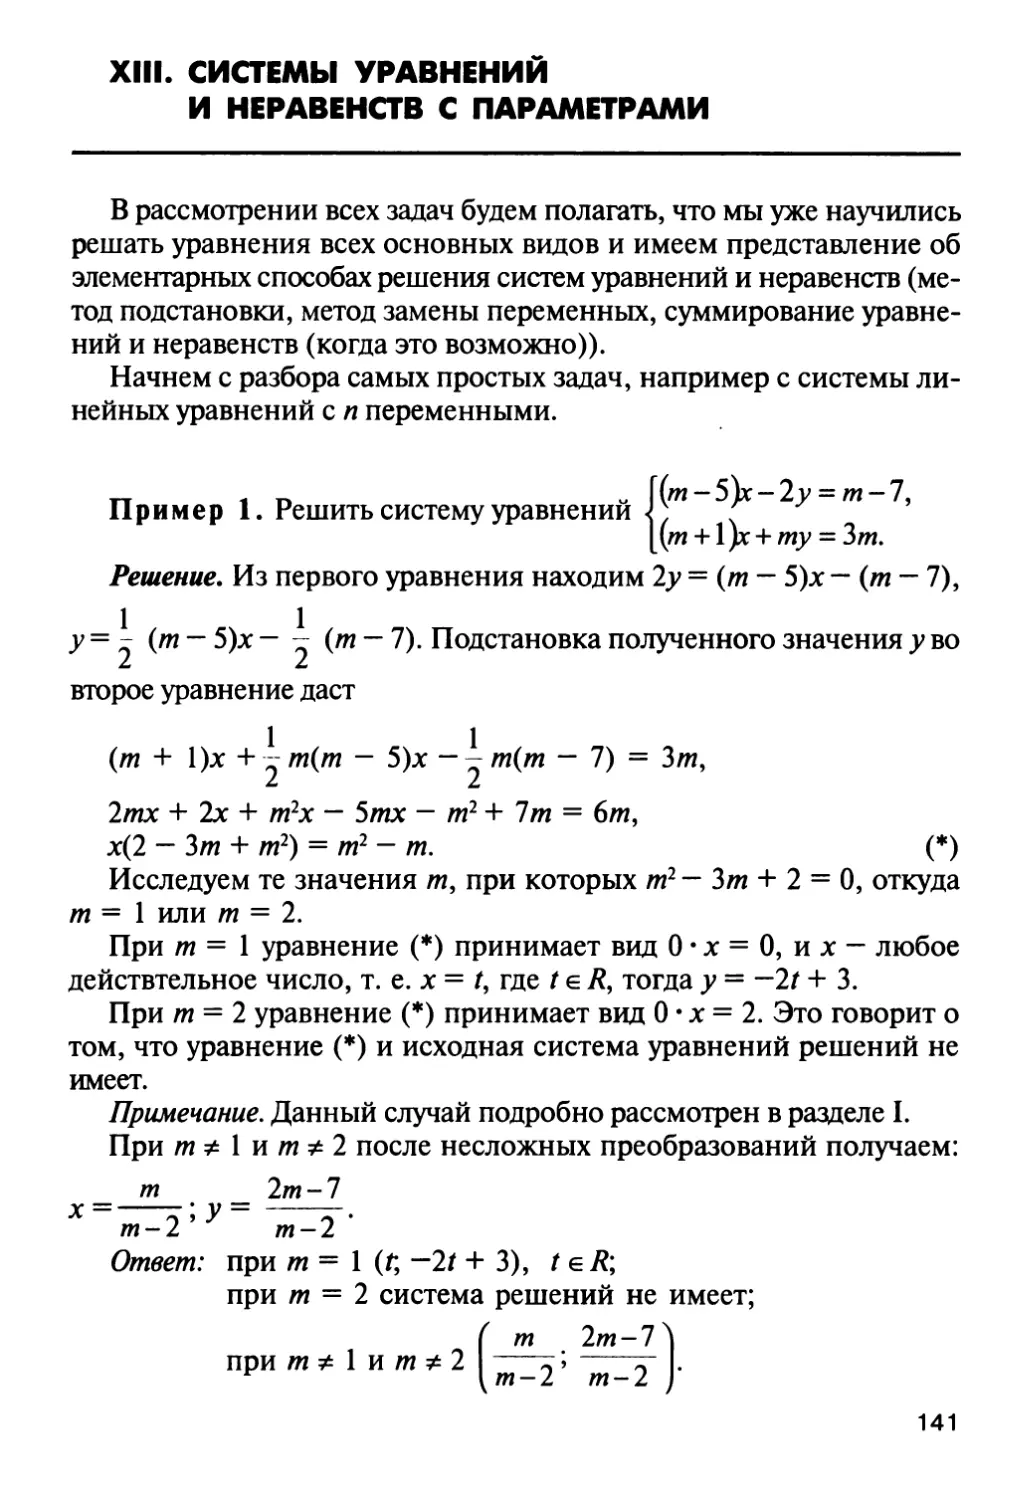 XIII. Системы уравнений и неравенств с параметрами